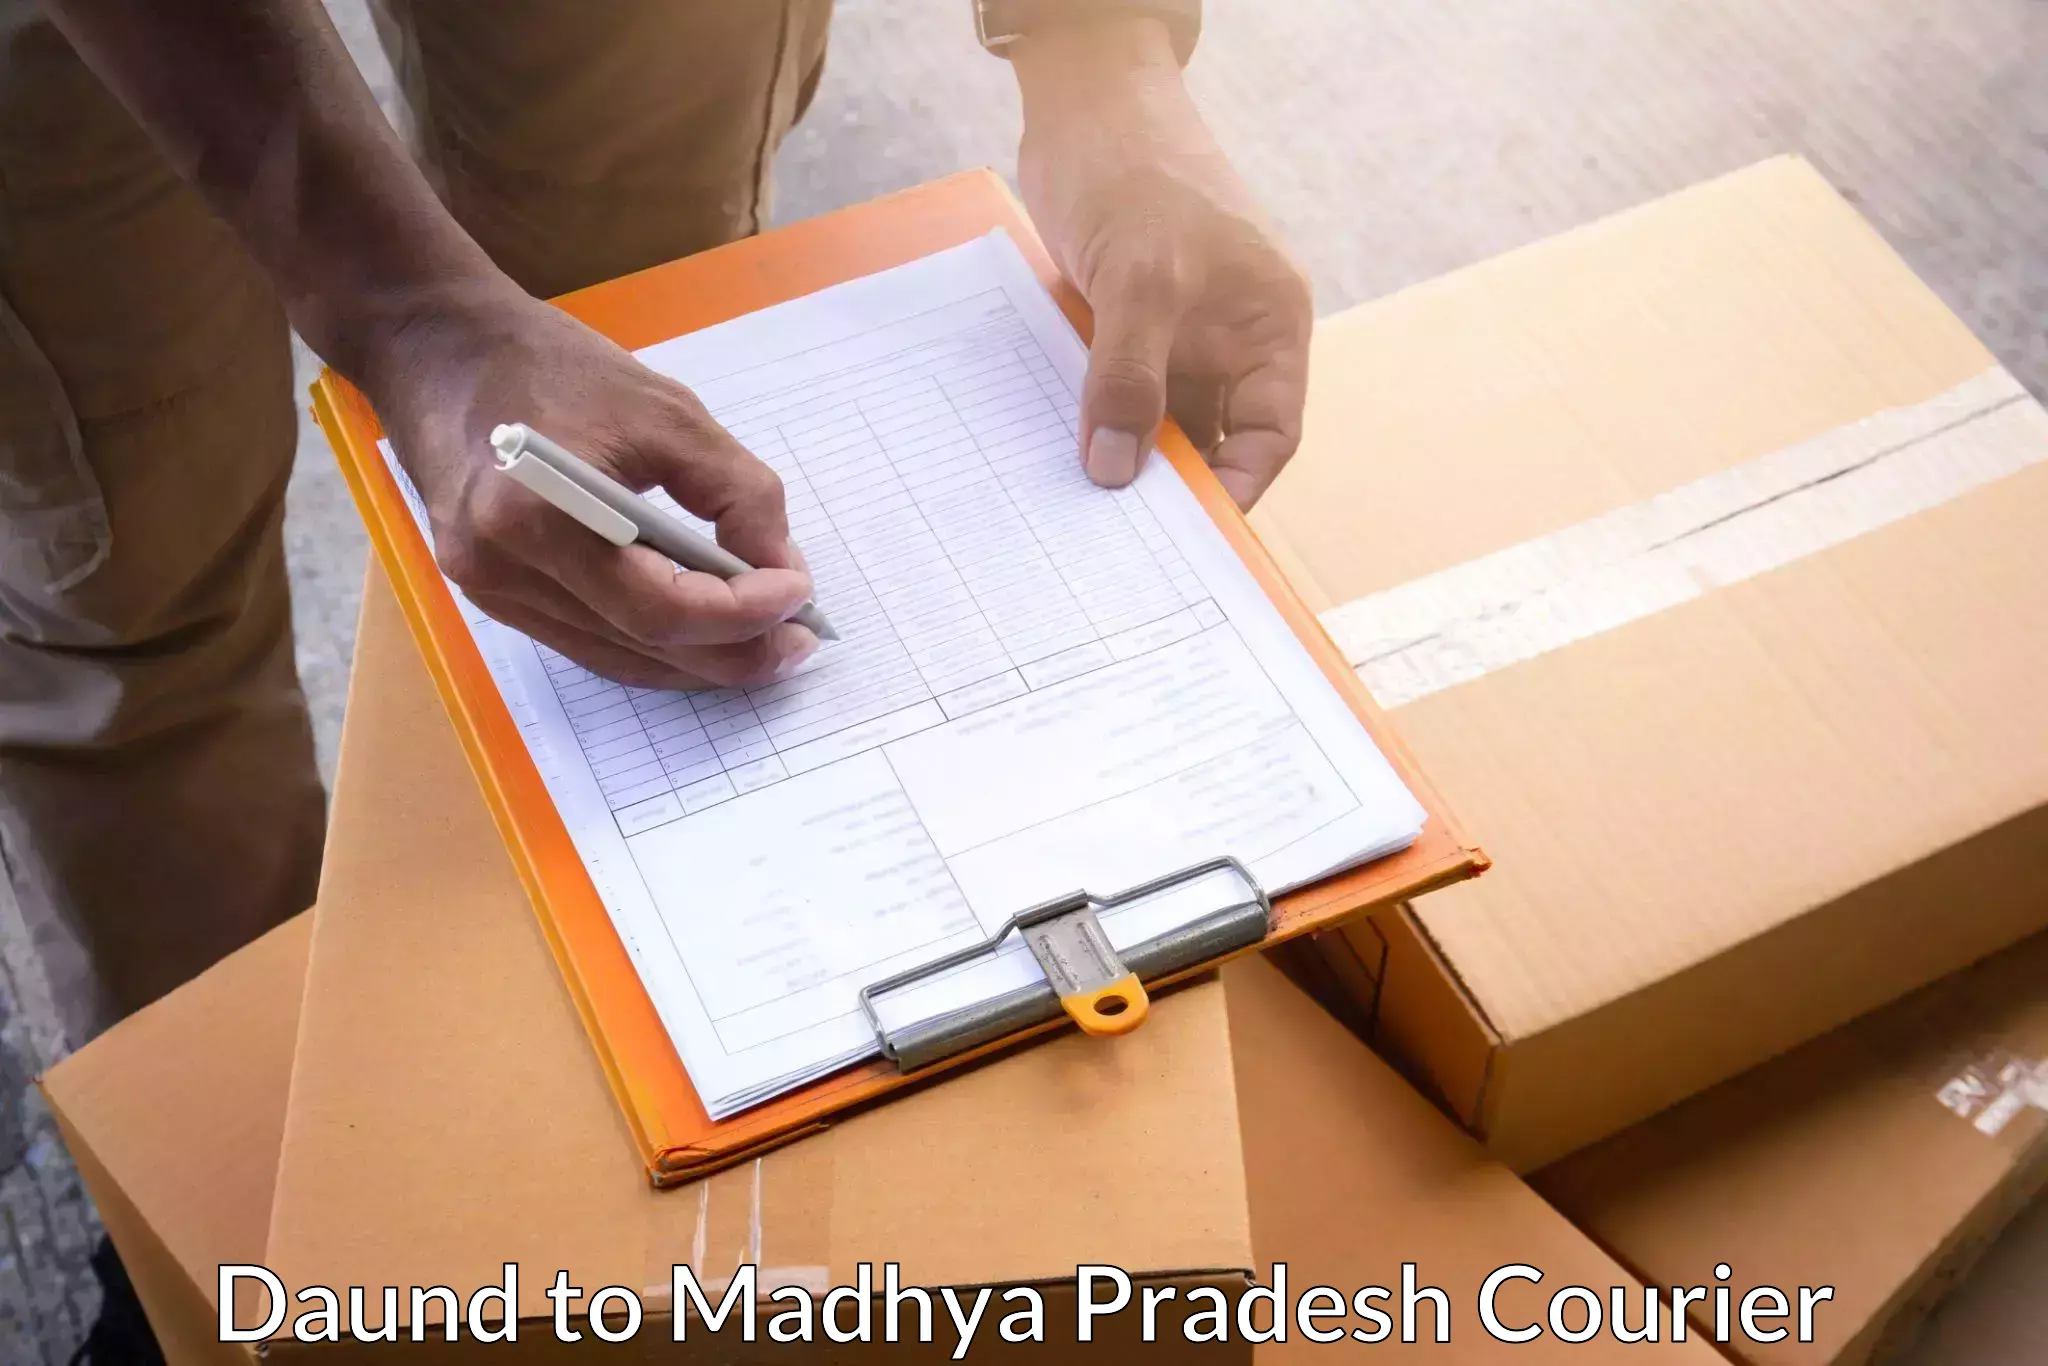 Global courier networks Daund to Madhya Pradesh